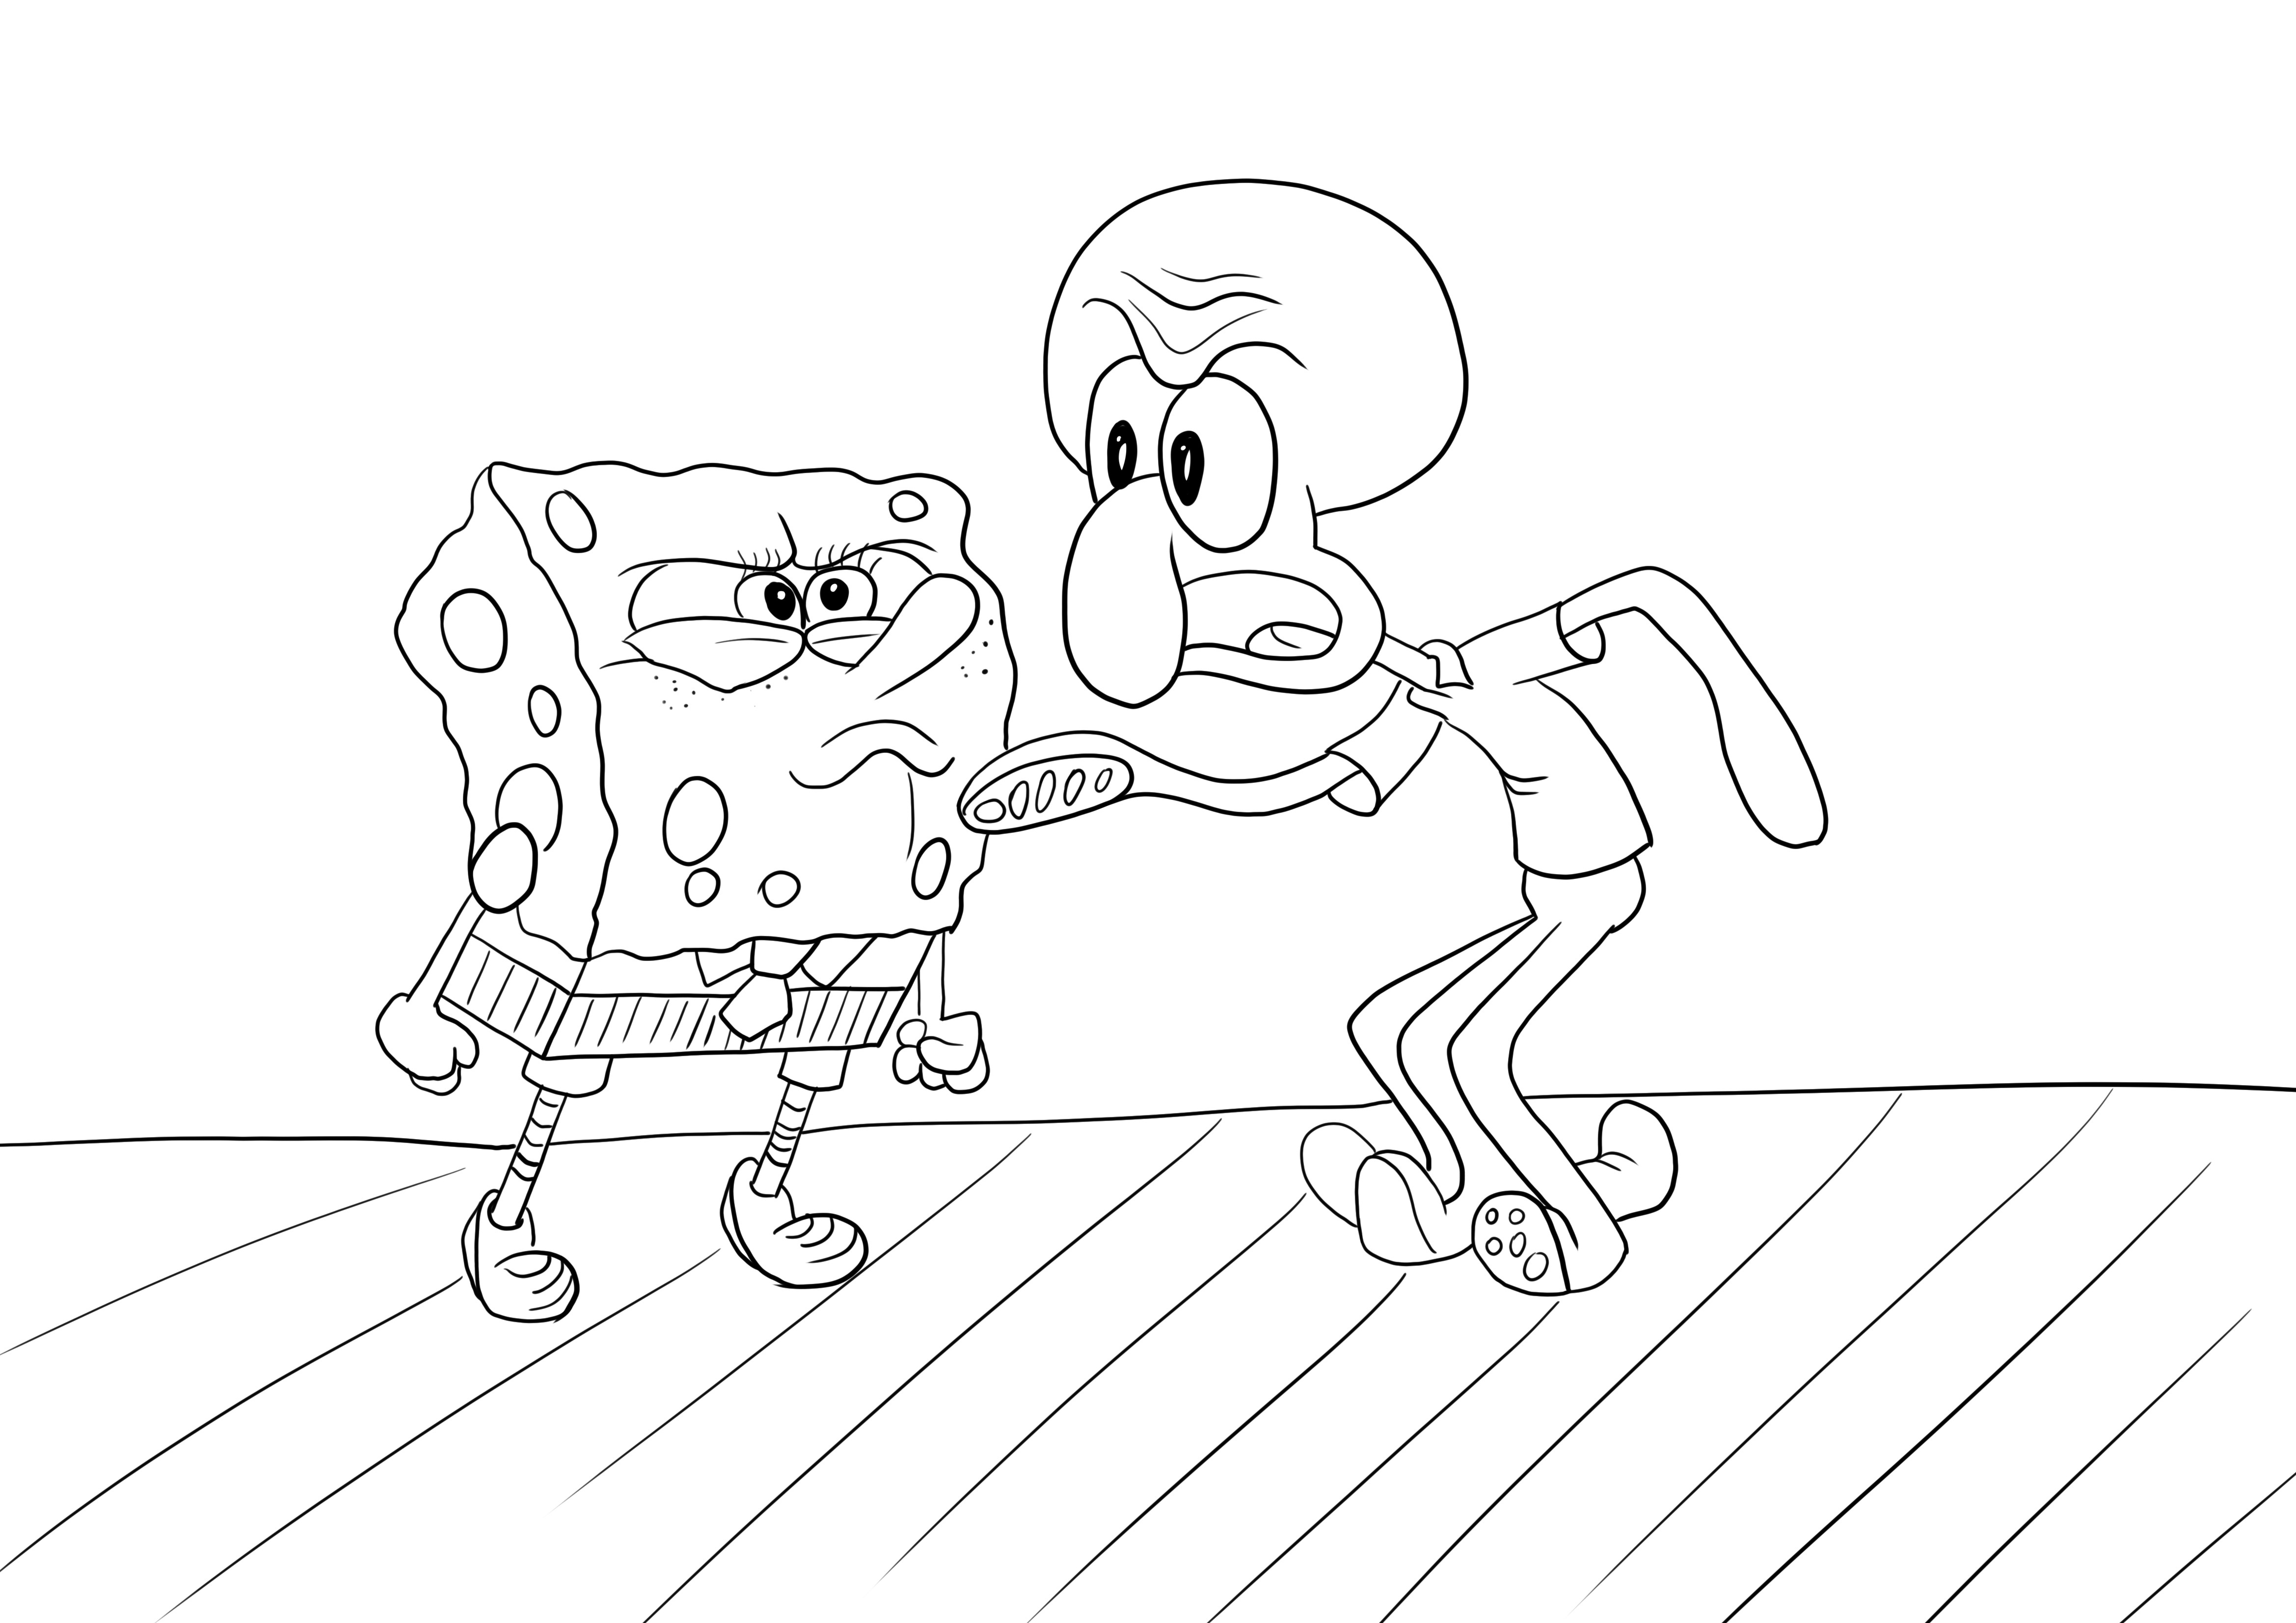 SpongeBob sta litigando per scaricare e stampare gratuitamente l'immagine